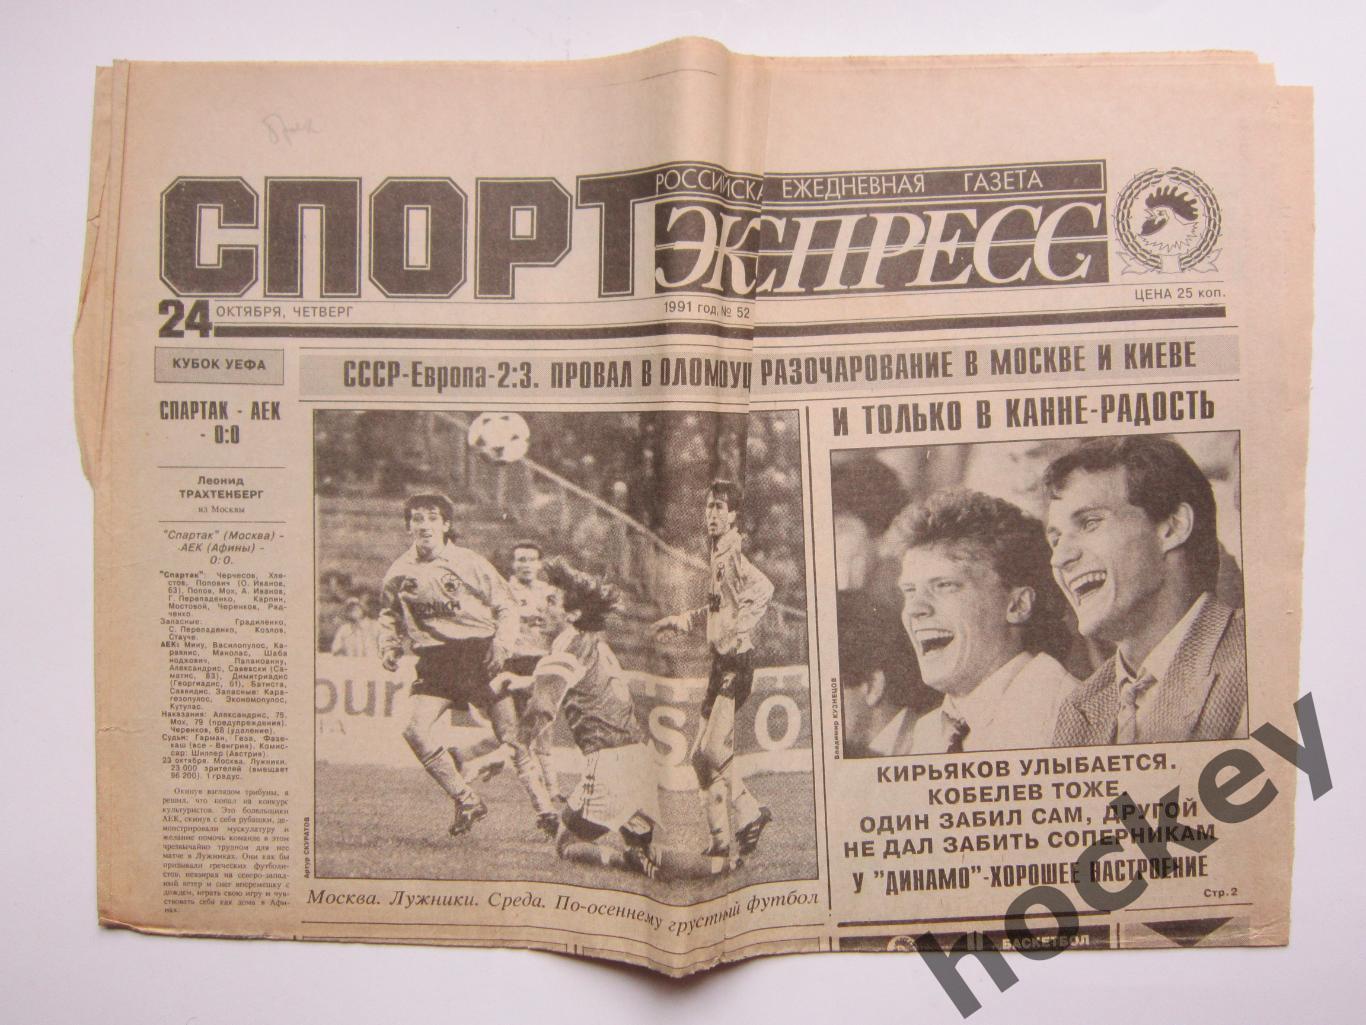 Спорт-Экспресс за 24.10.1991. Отчеты о матчах Спартак-АЕК, Сигма-Торпедо и др.